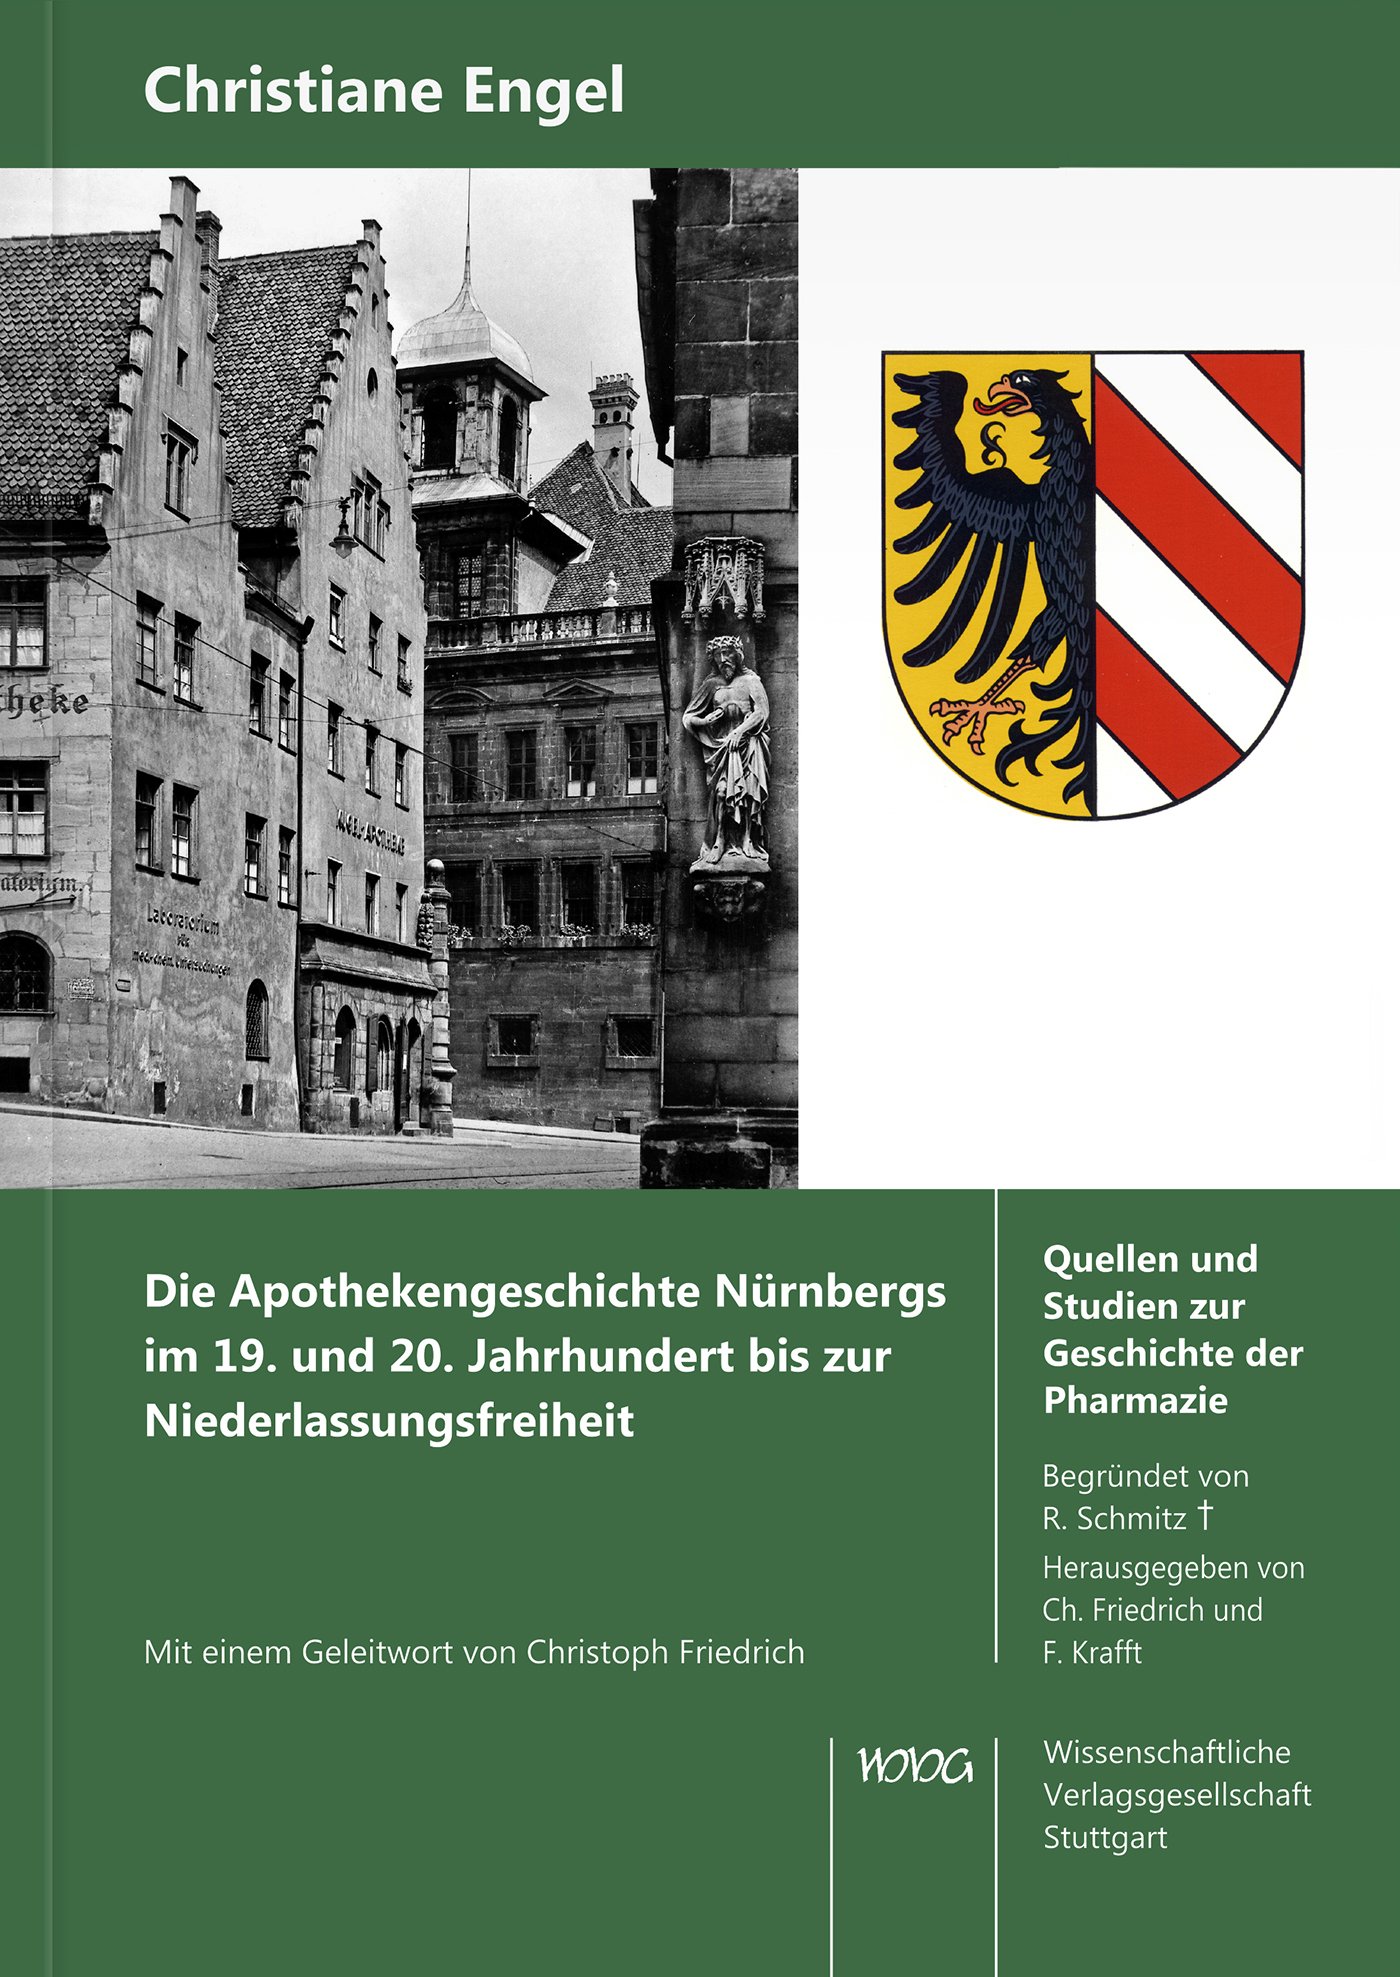 Die Apothekengeschichte Nürnbergs im 19. und 20.
Jahrhundert bis zur Niederlassungsfreiheit